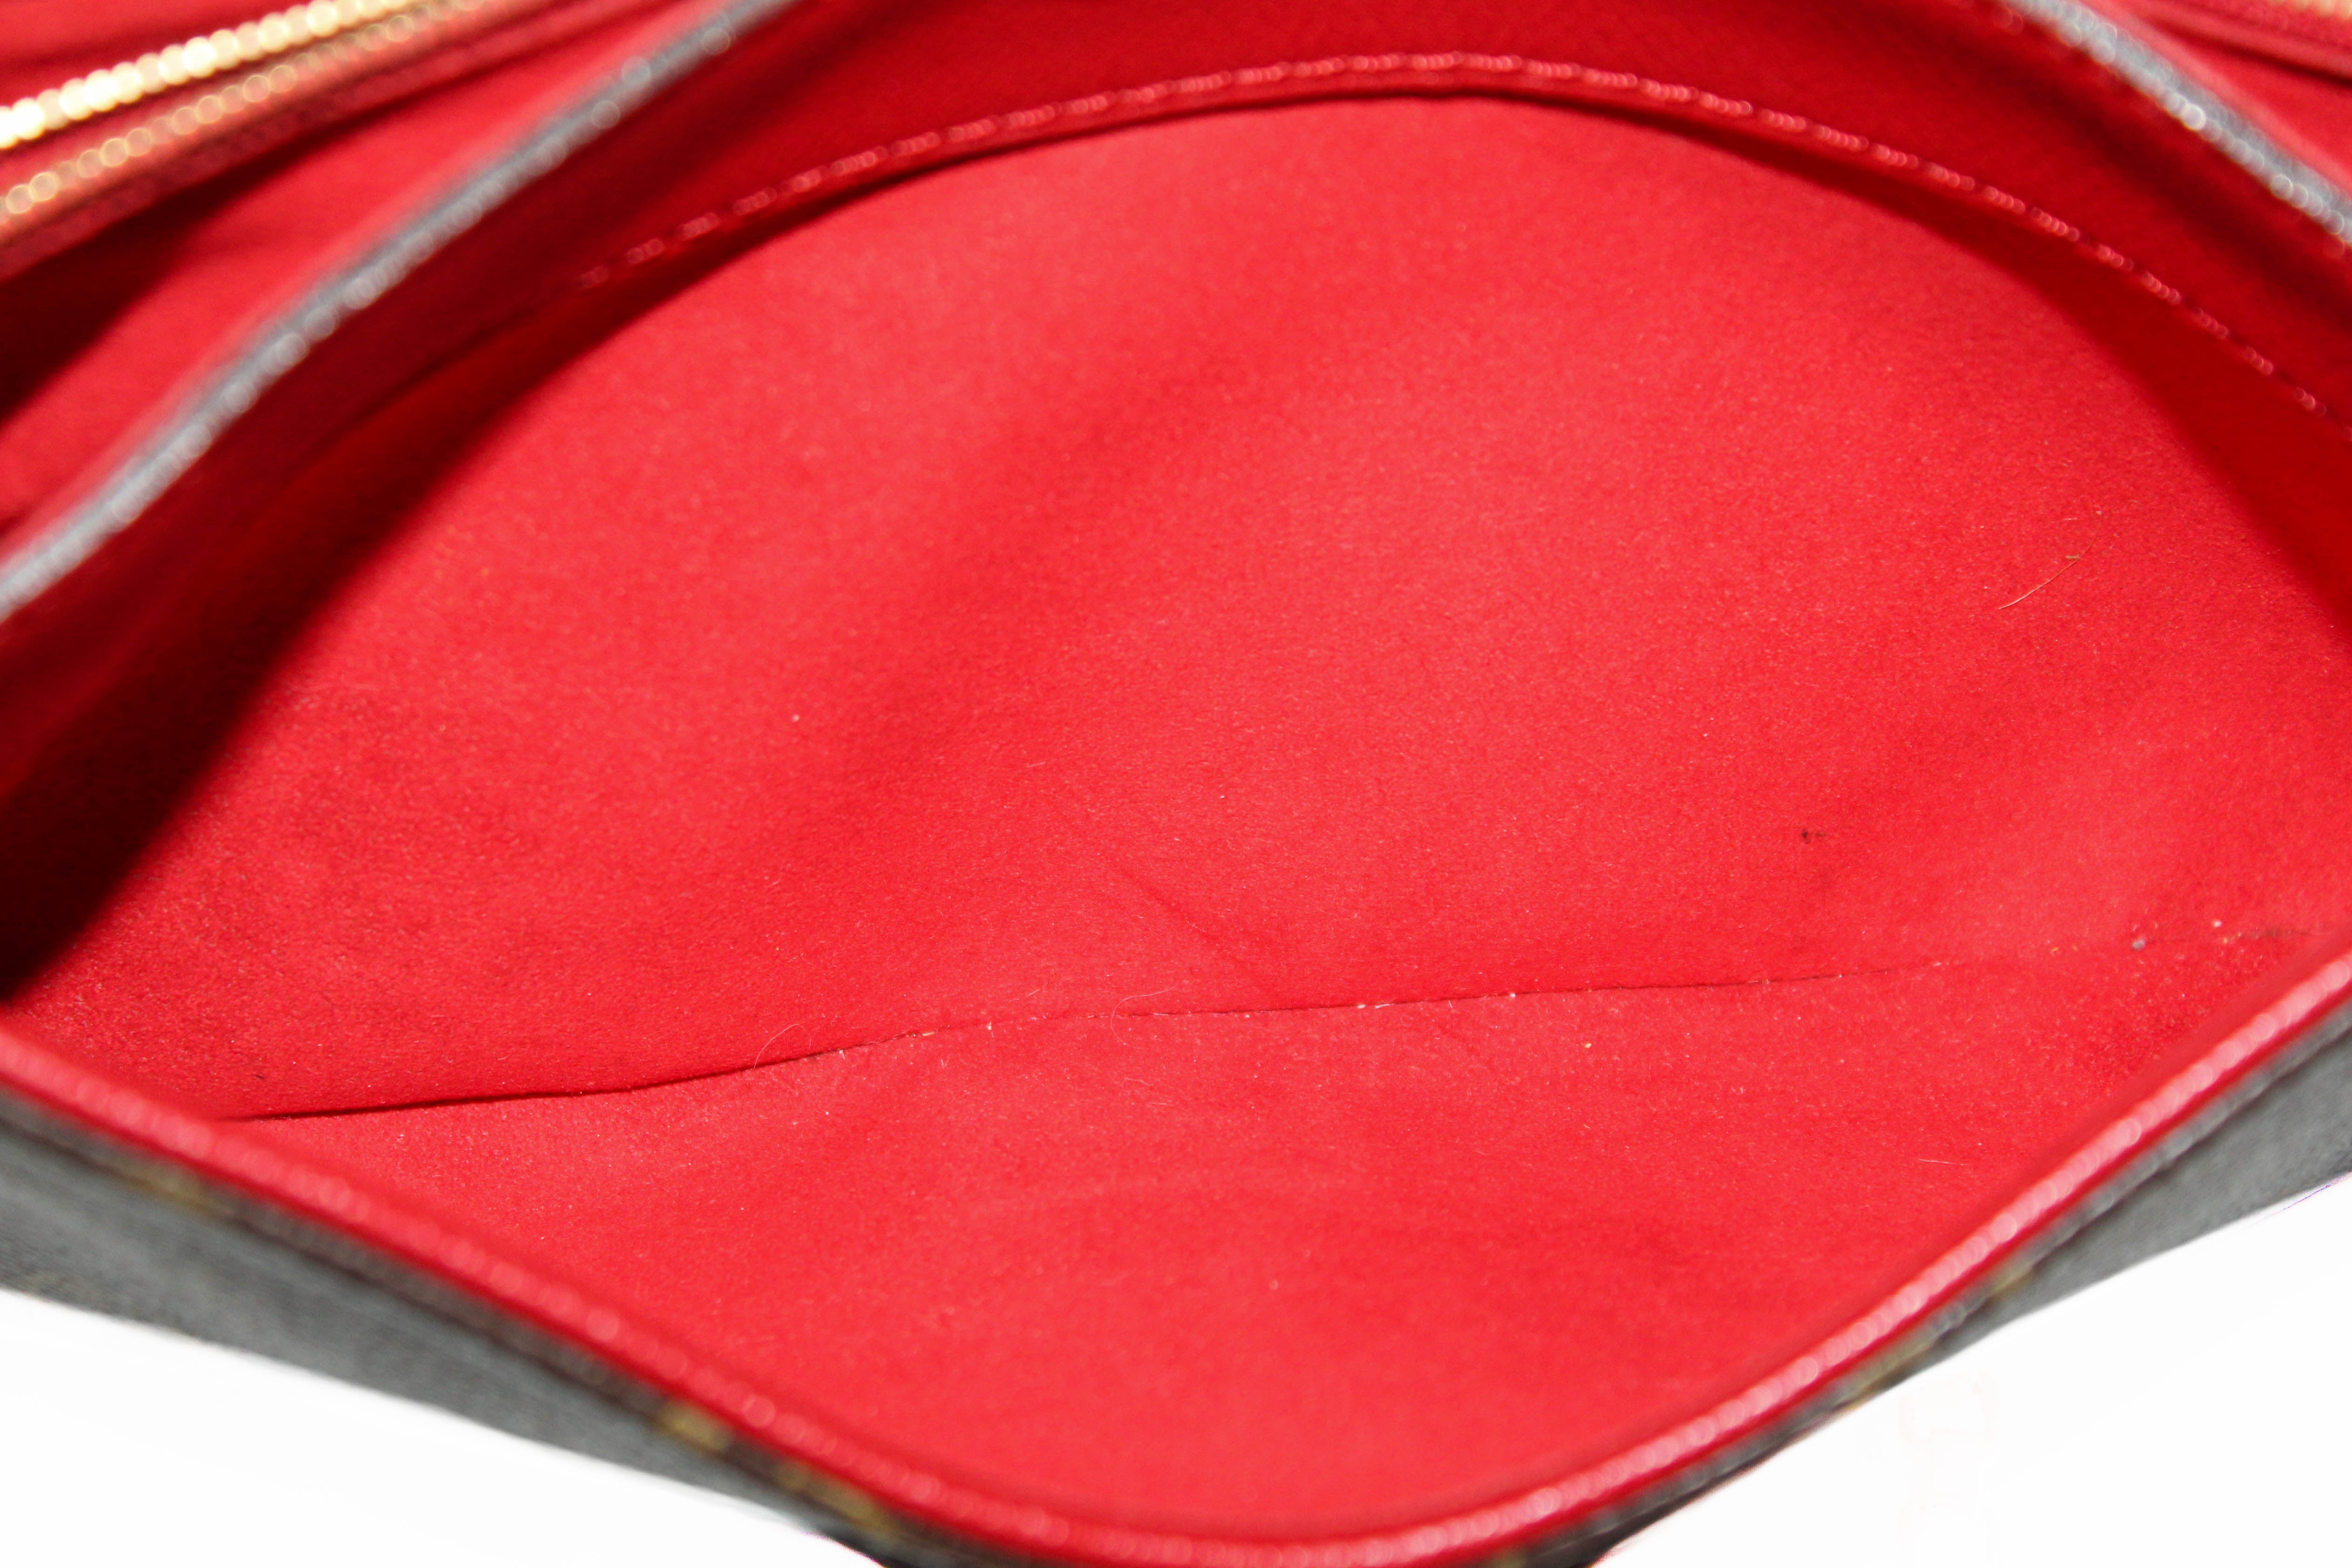 Louis Vuitton Pallas Shoulder bag 377066